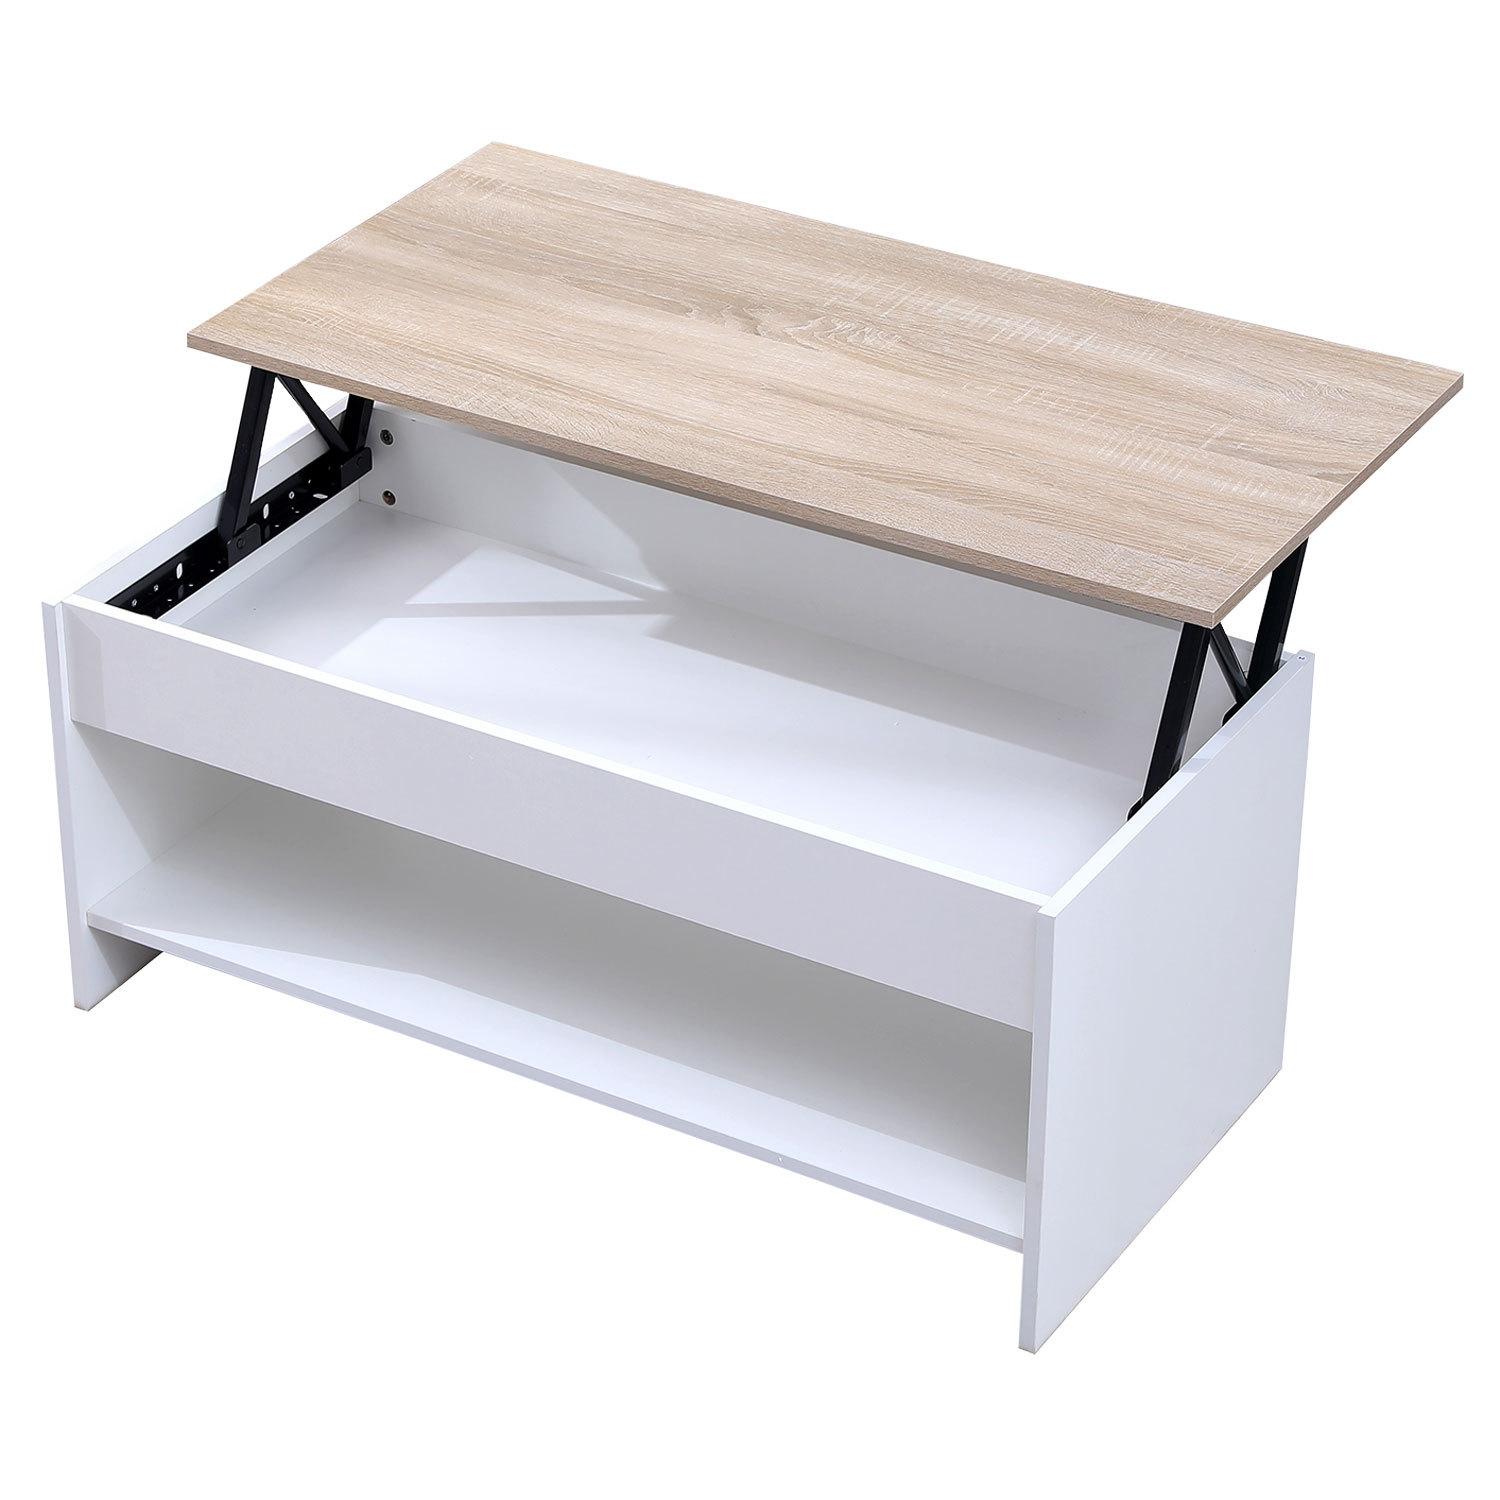 Table basse avec plateau relevable blanche et bois HEDDA